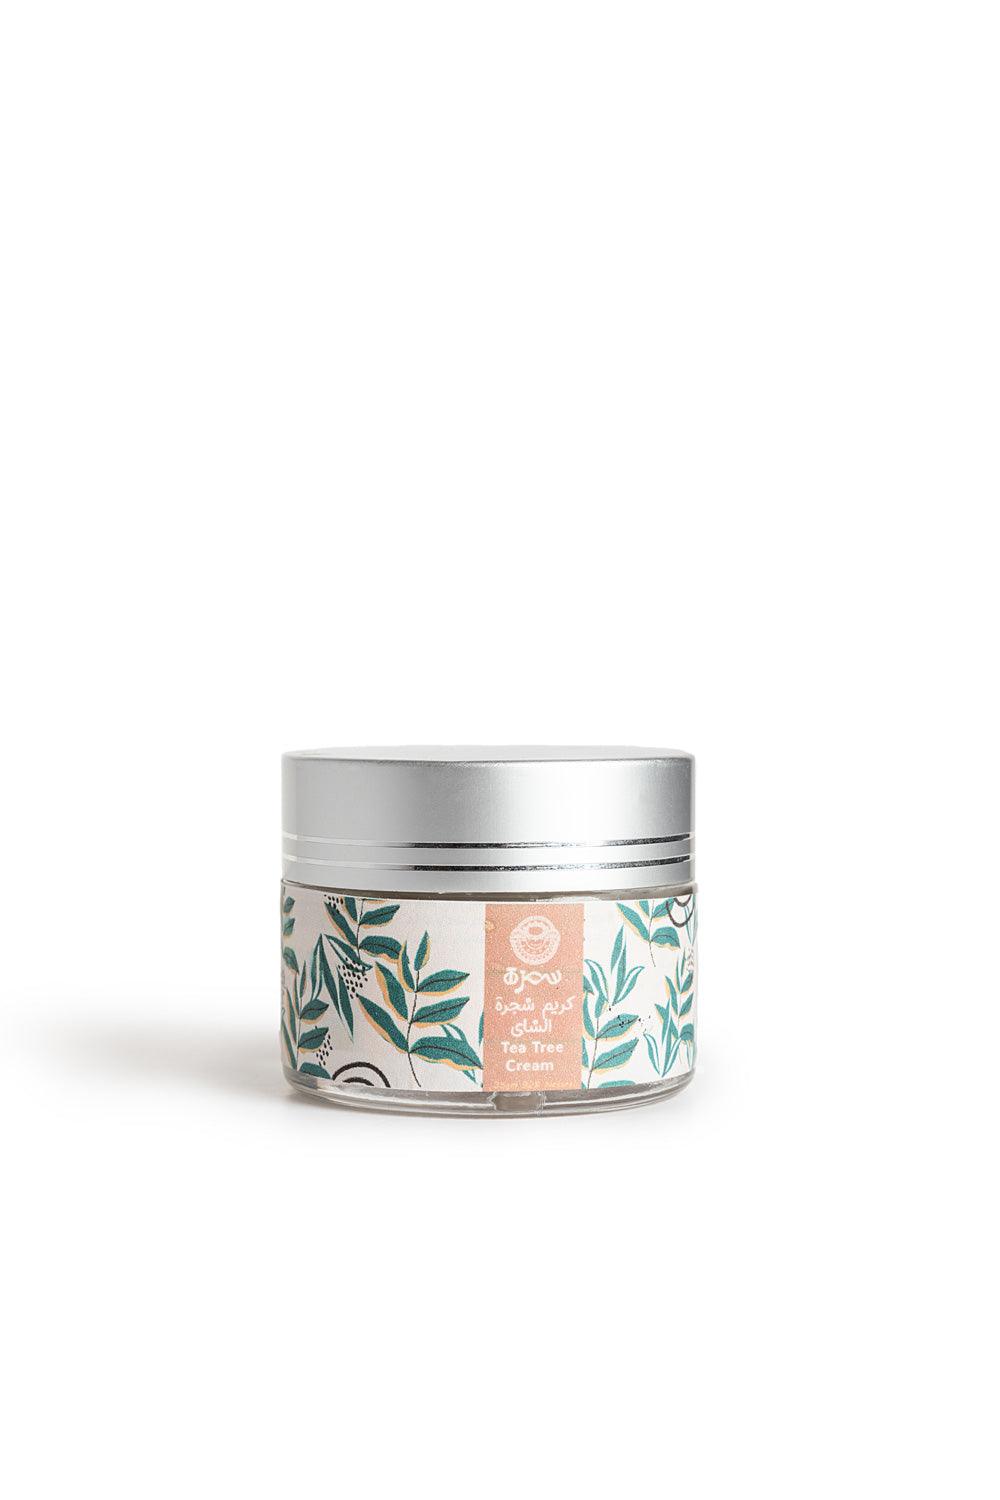 SAMRA Tea Tree Face Cream - Beauty Bounty